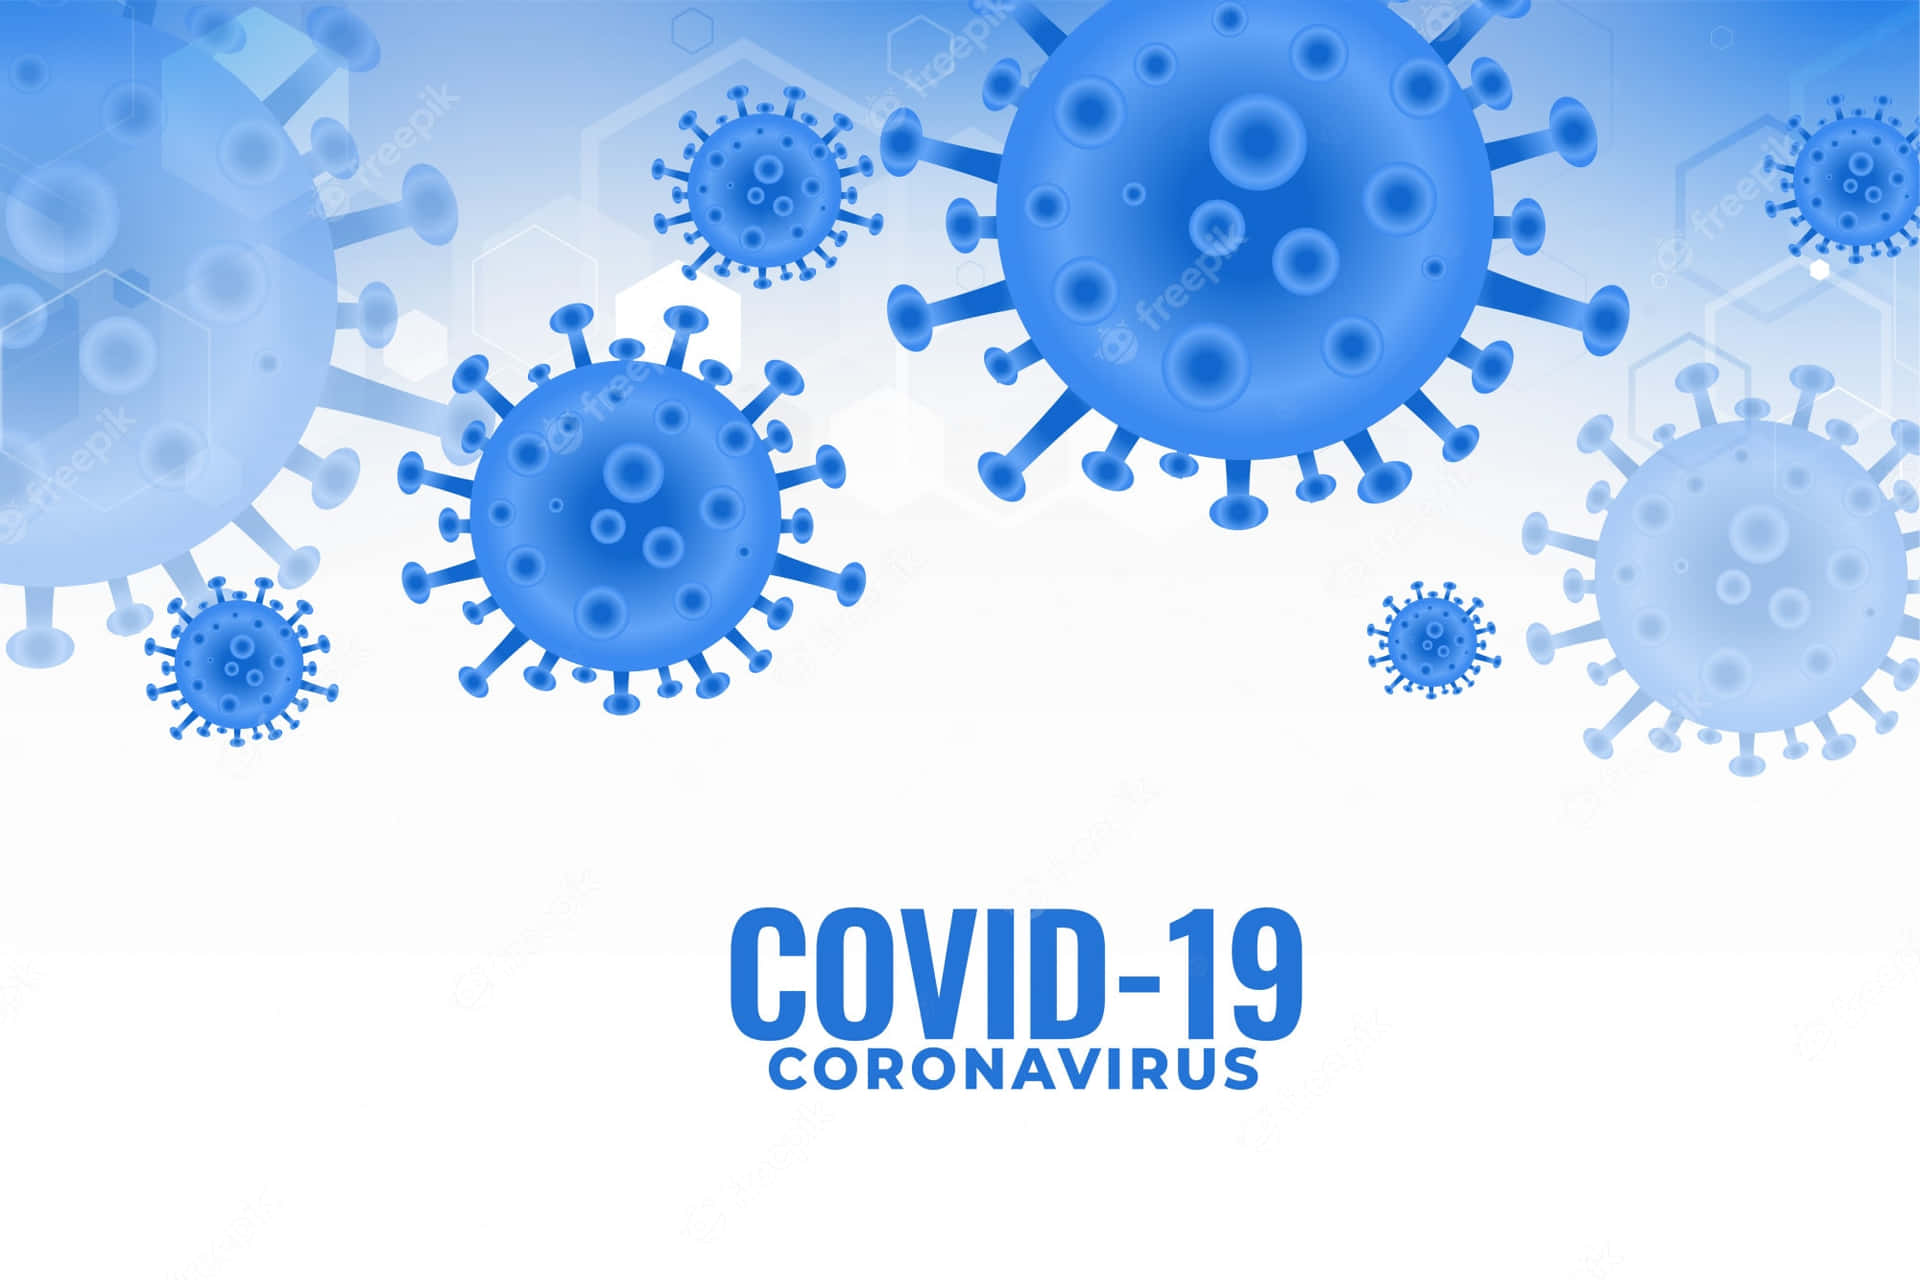 Mantienitial Sicuro, Insieme Alla Tua Famiglia, Con Le Informazioni Corrette E I Provvedimenti Preventivi Riguardanti Il Coronavirus.